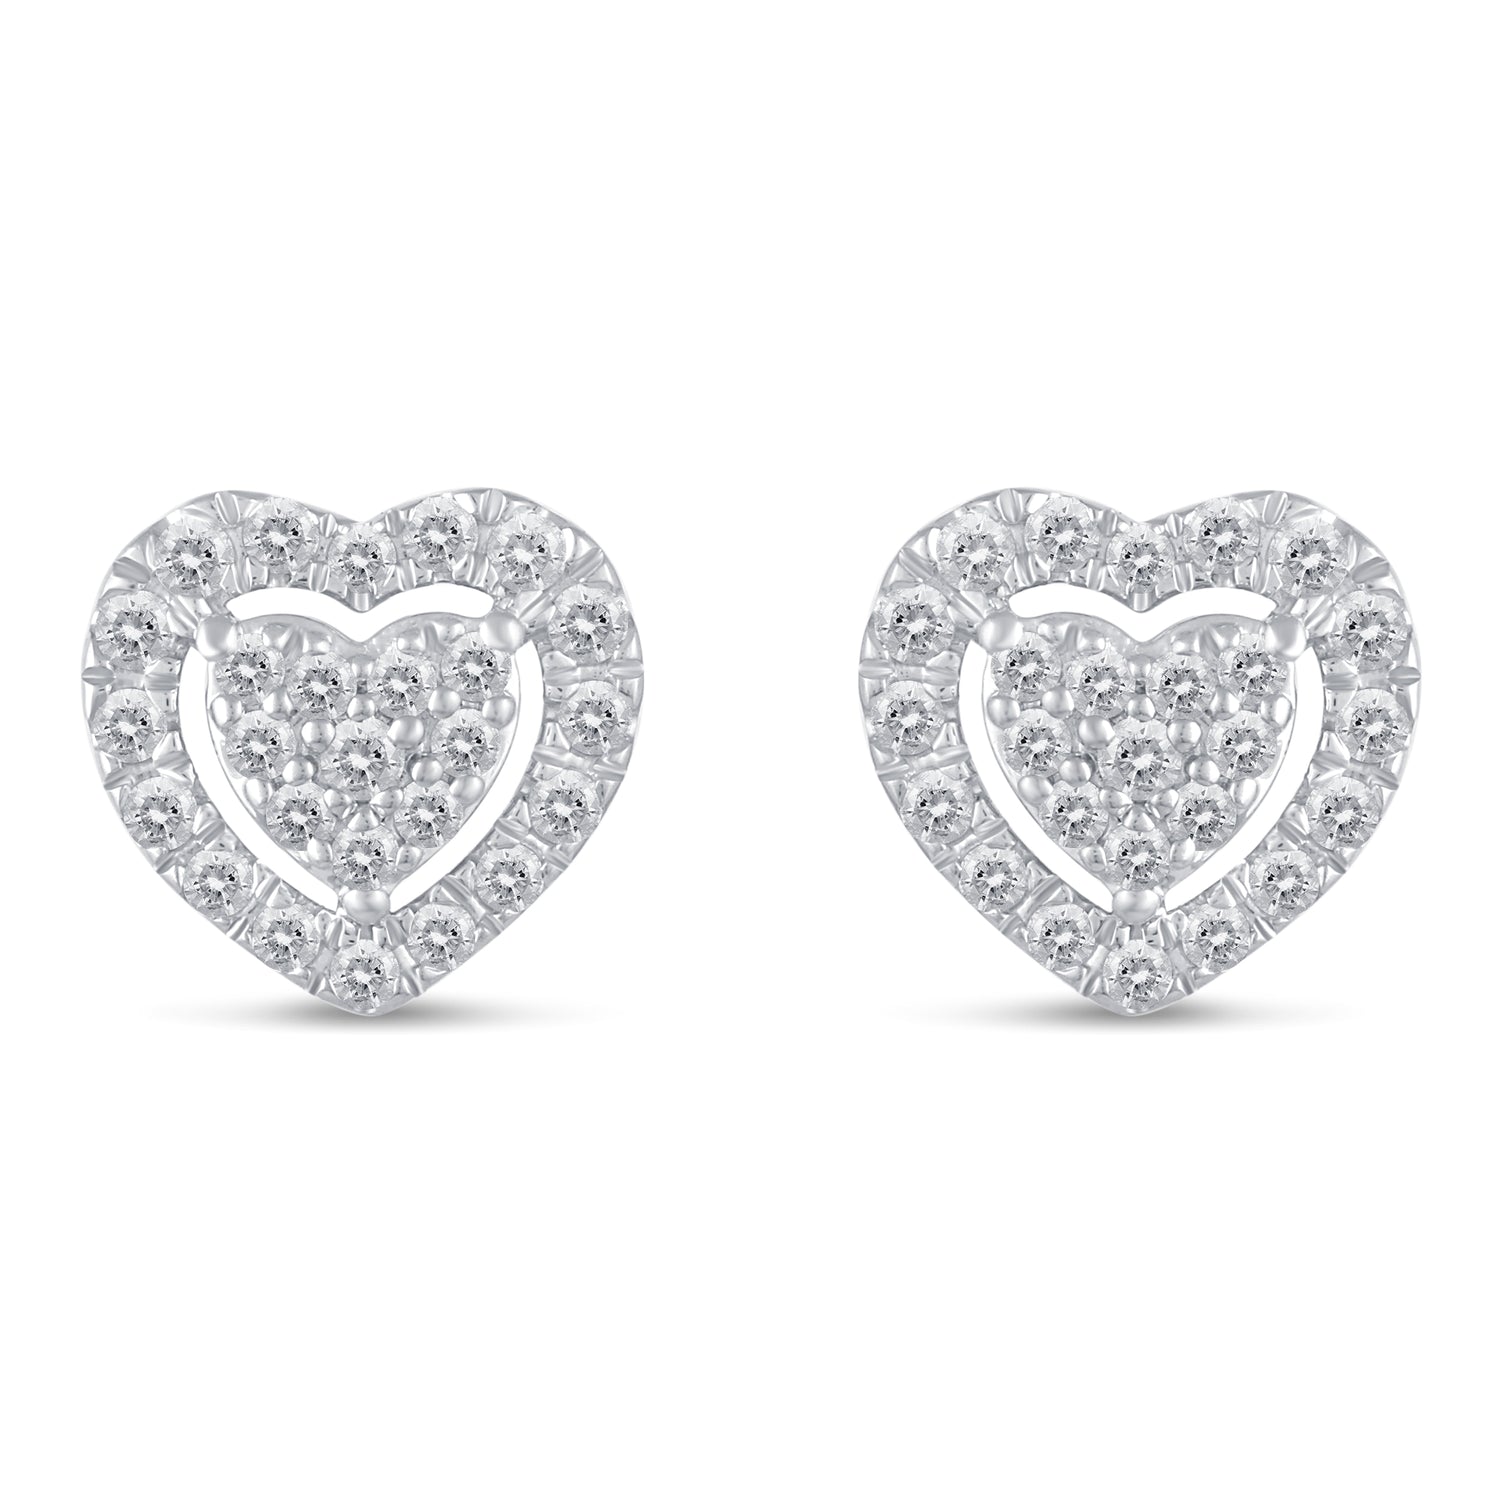 1/2Ct Diamond Halo Heart Stud Earrings Set in 925 Sterling Silver